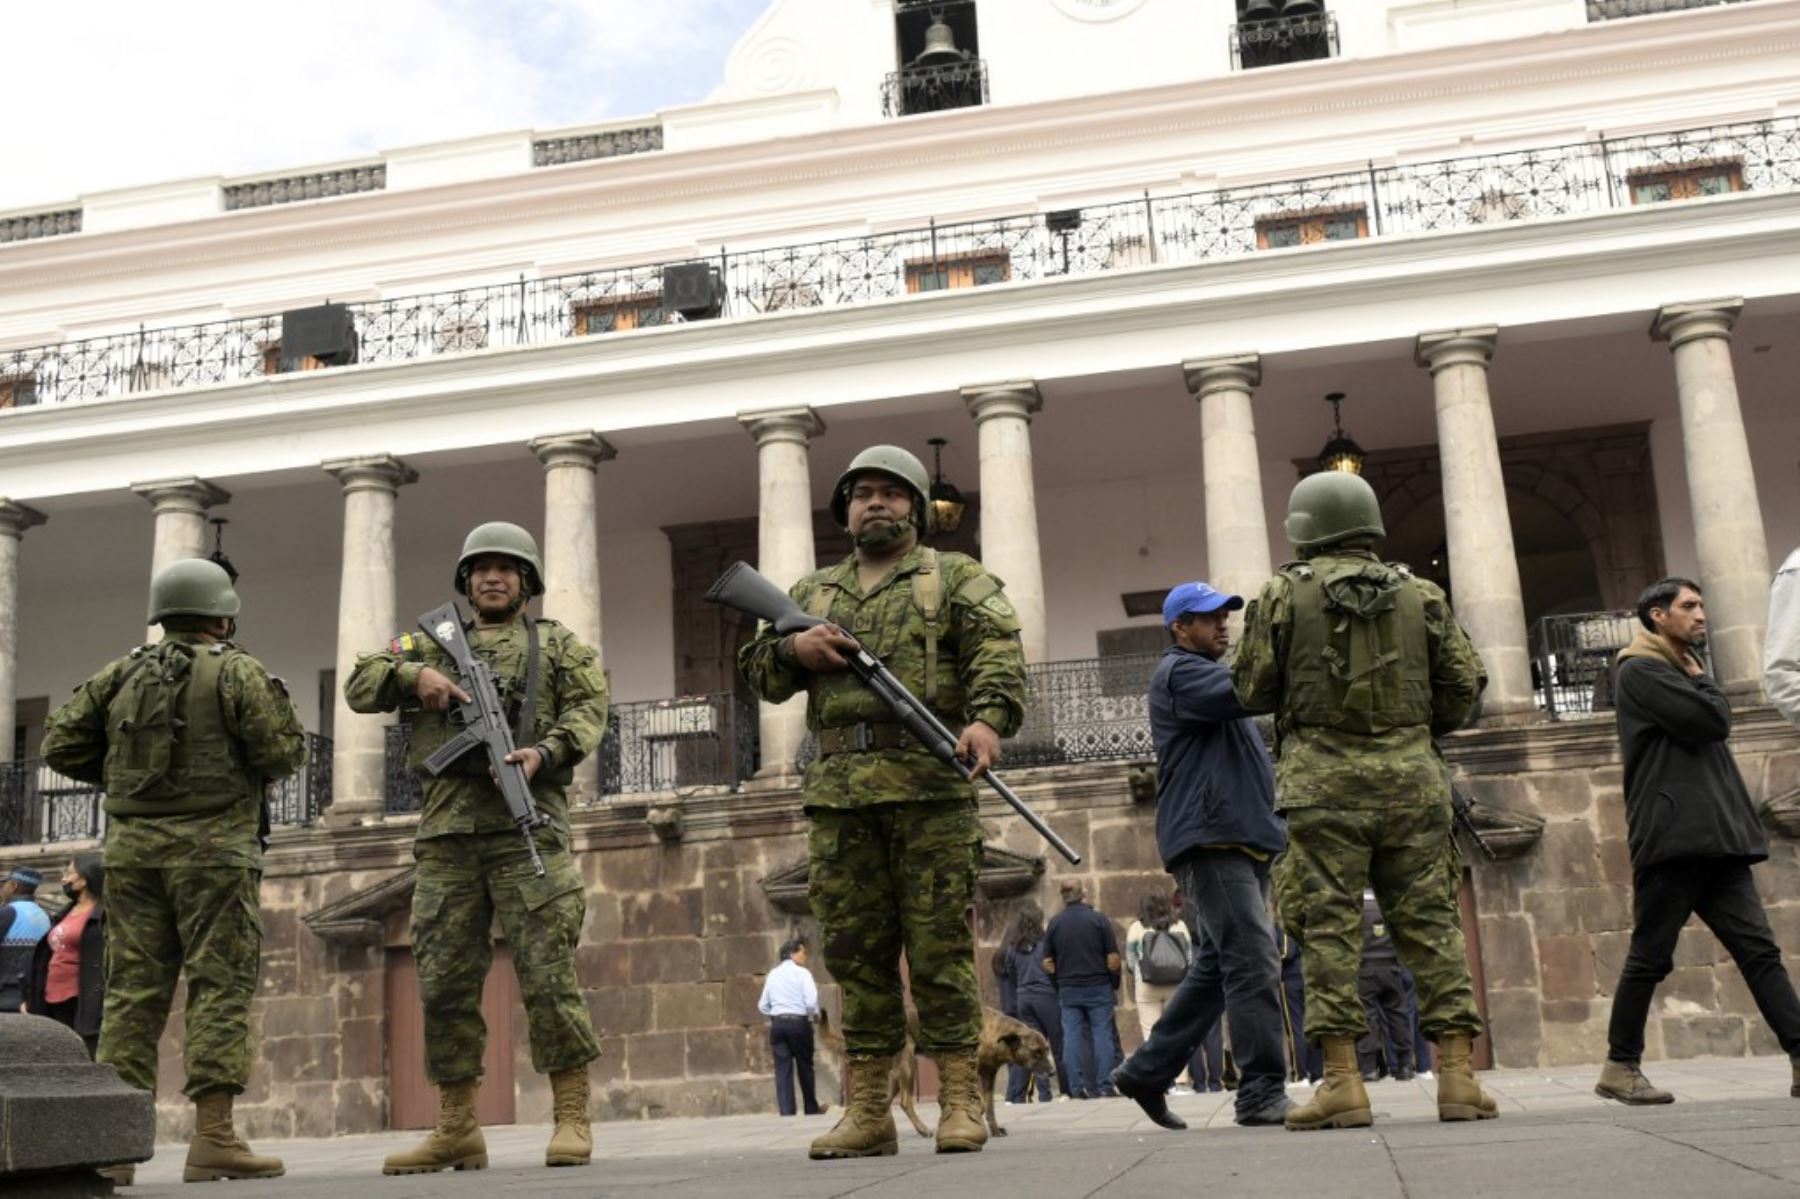 Crimen organizado: Narcotráfico contra la democracia ecuatoriana